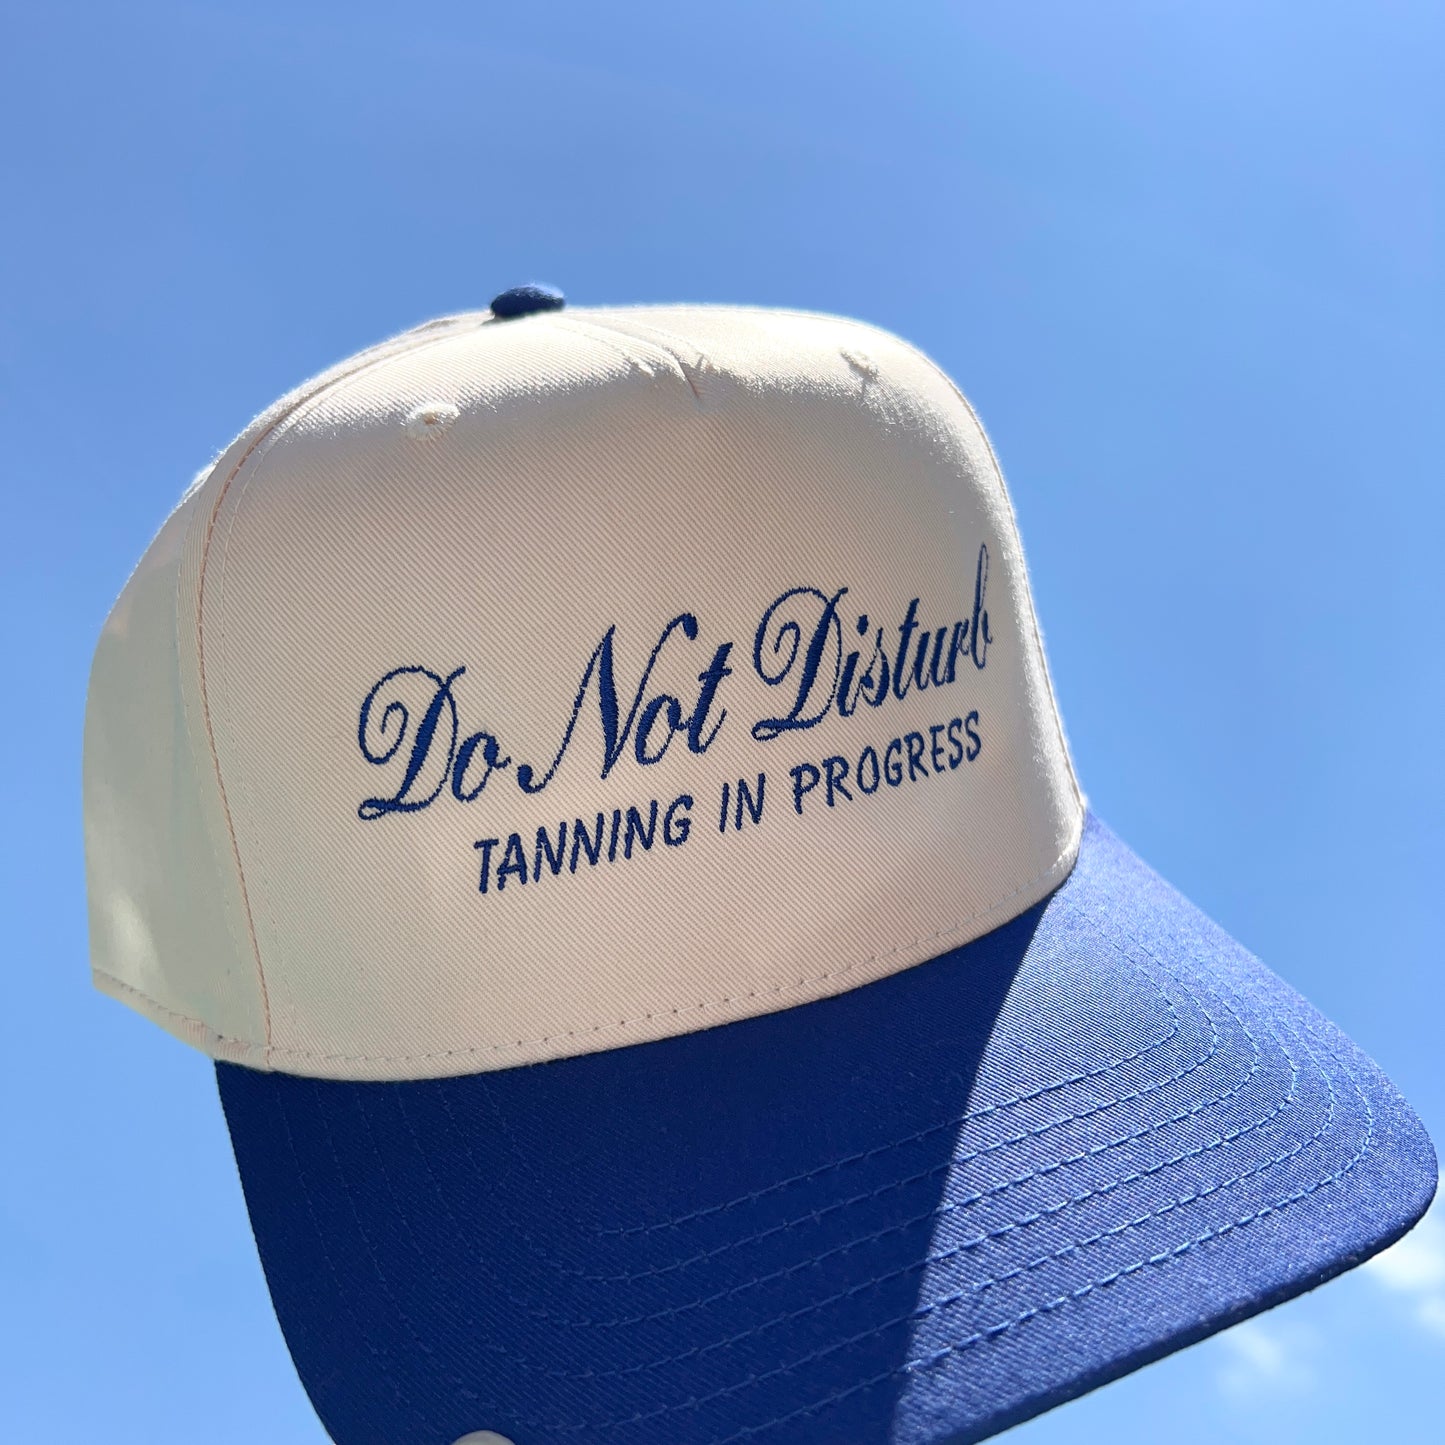 Do Not Disturb Trucker Hat